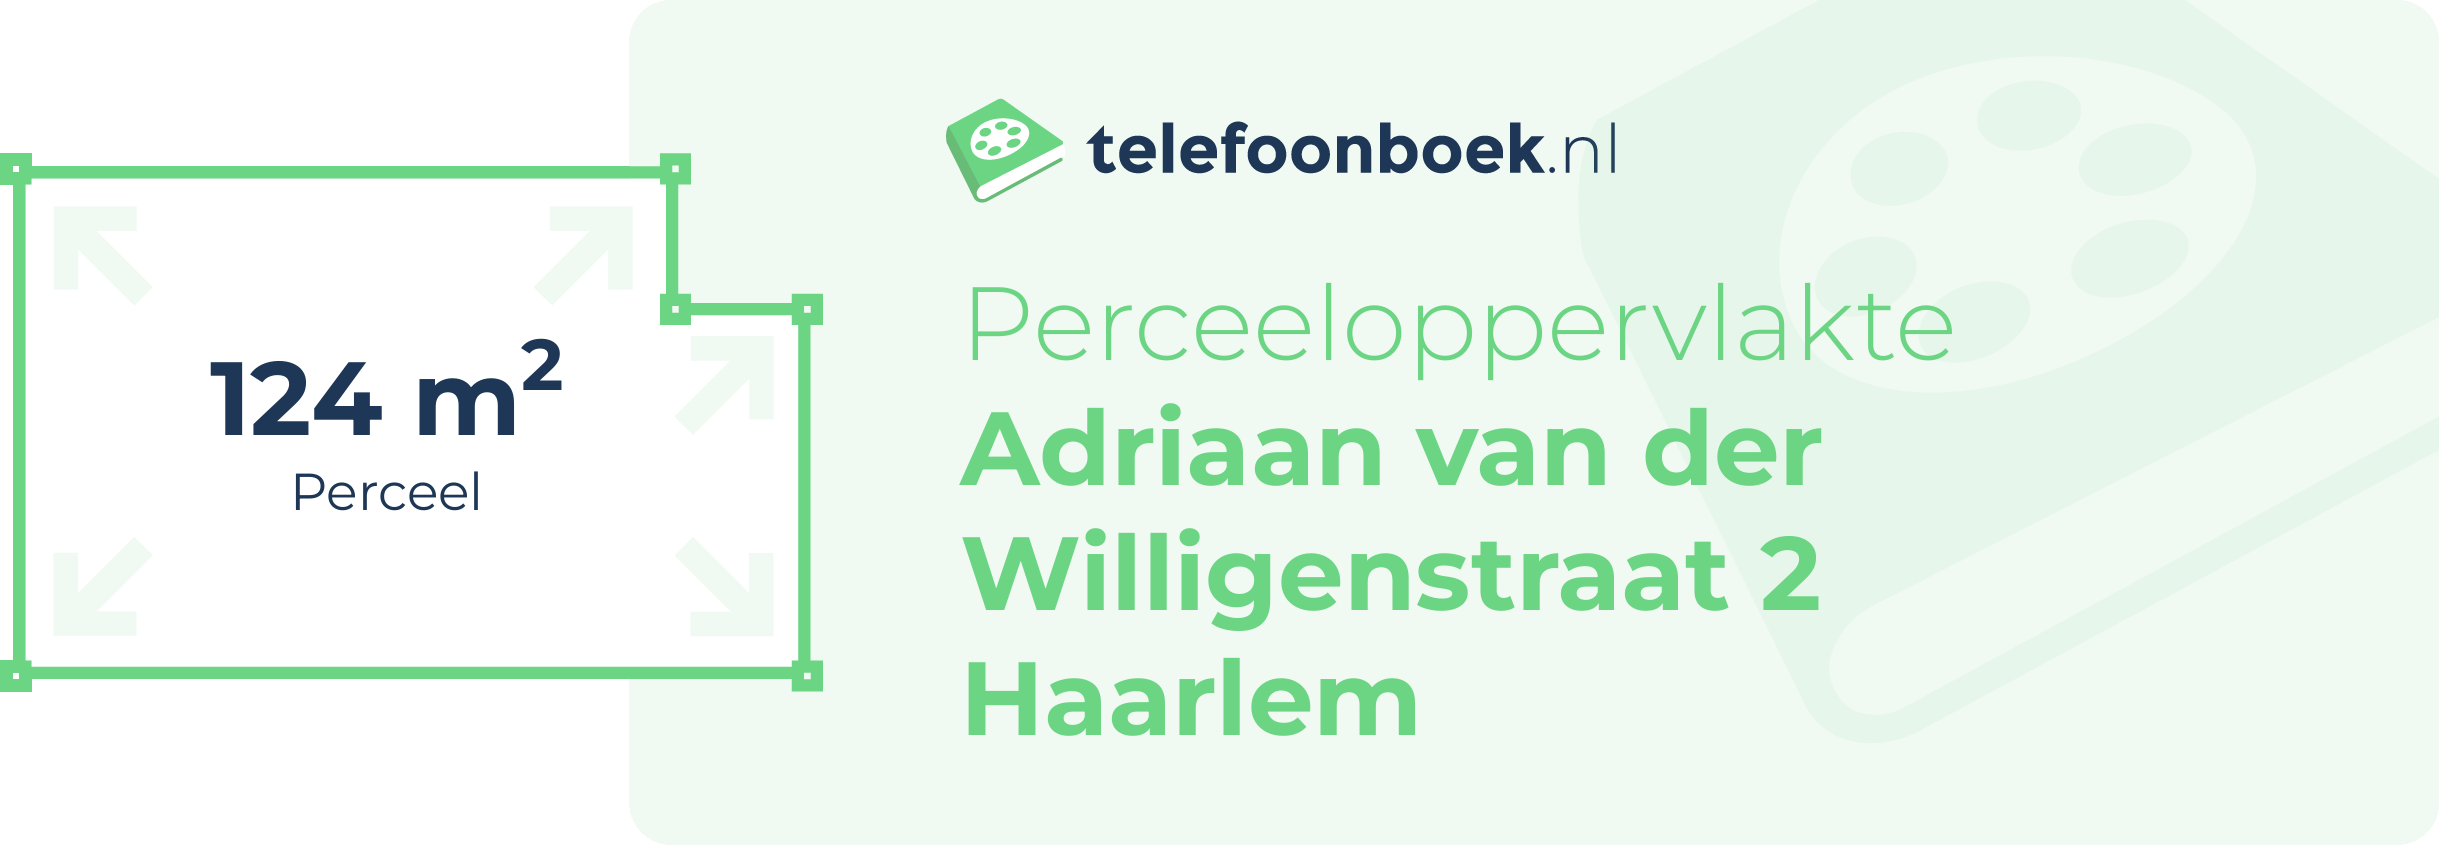 Perceeloppervlakte Adriaan Van Der Willigenstraat 2 Haarlem